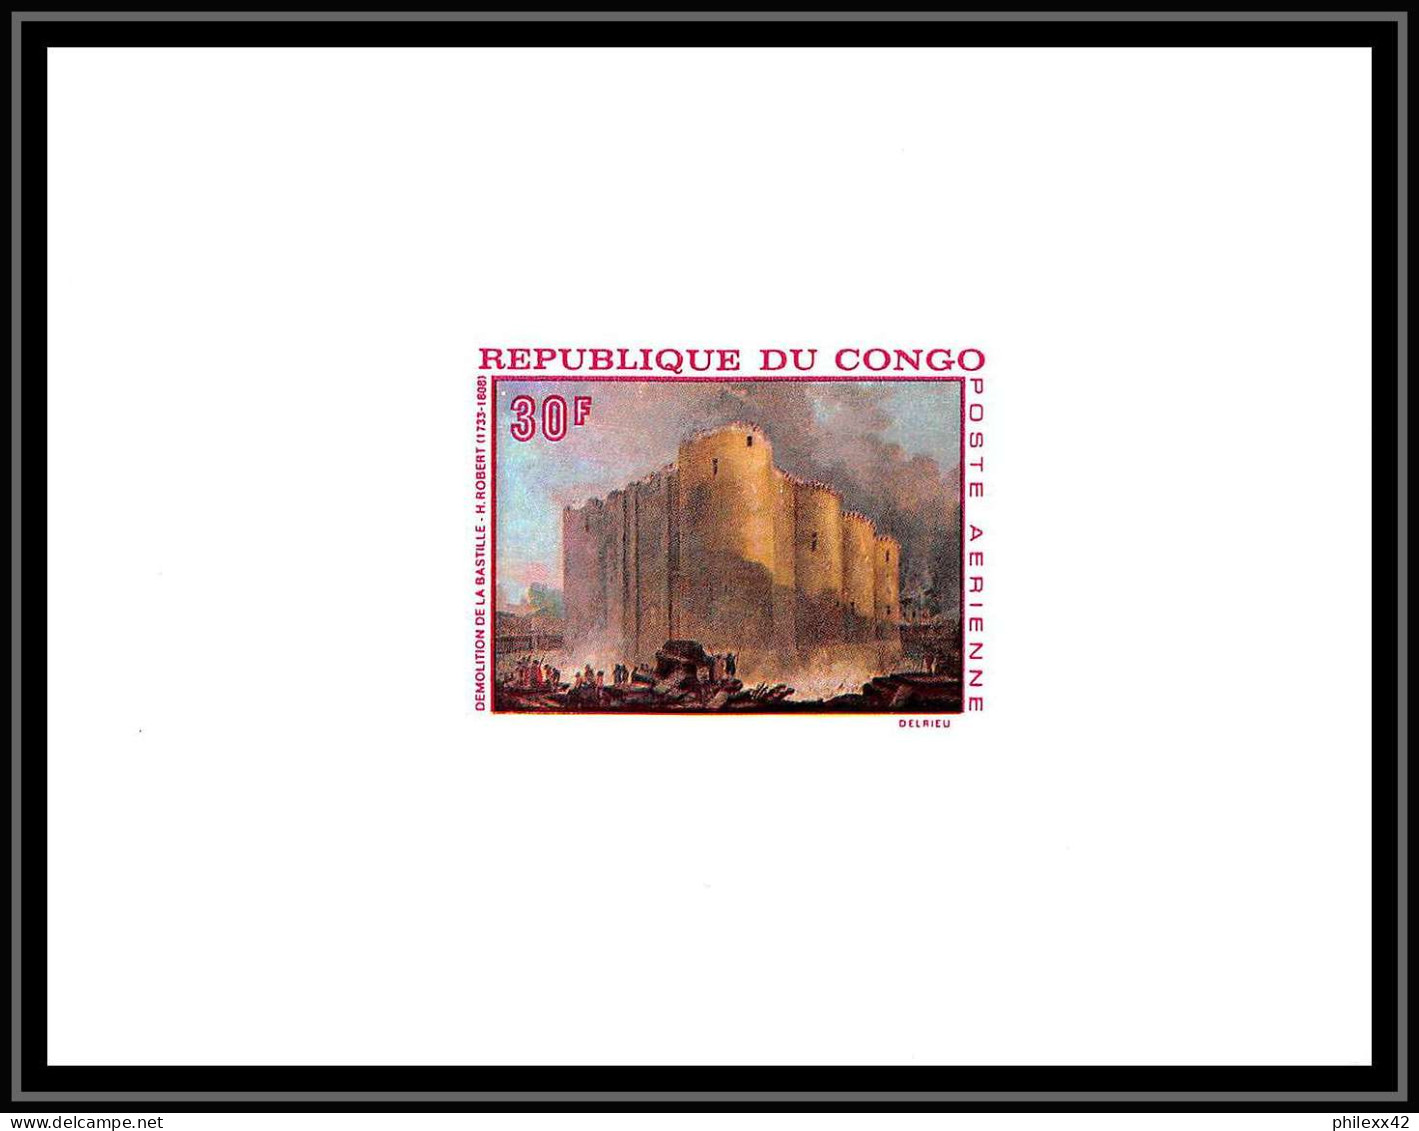 0532 Epreuve De Luxe Deluxe Proof Congo Poste Aerienne PA N°72 Tableau (painting) Chateau Castle La Bastille ROBERT - Neufs